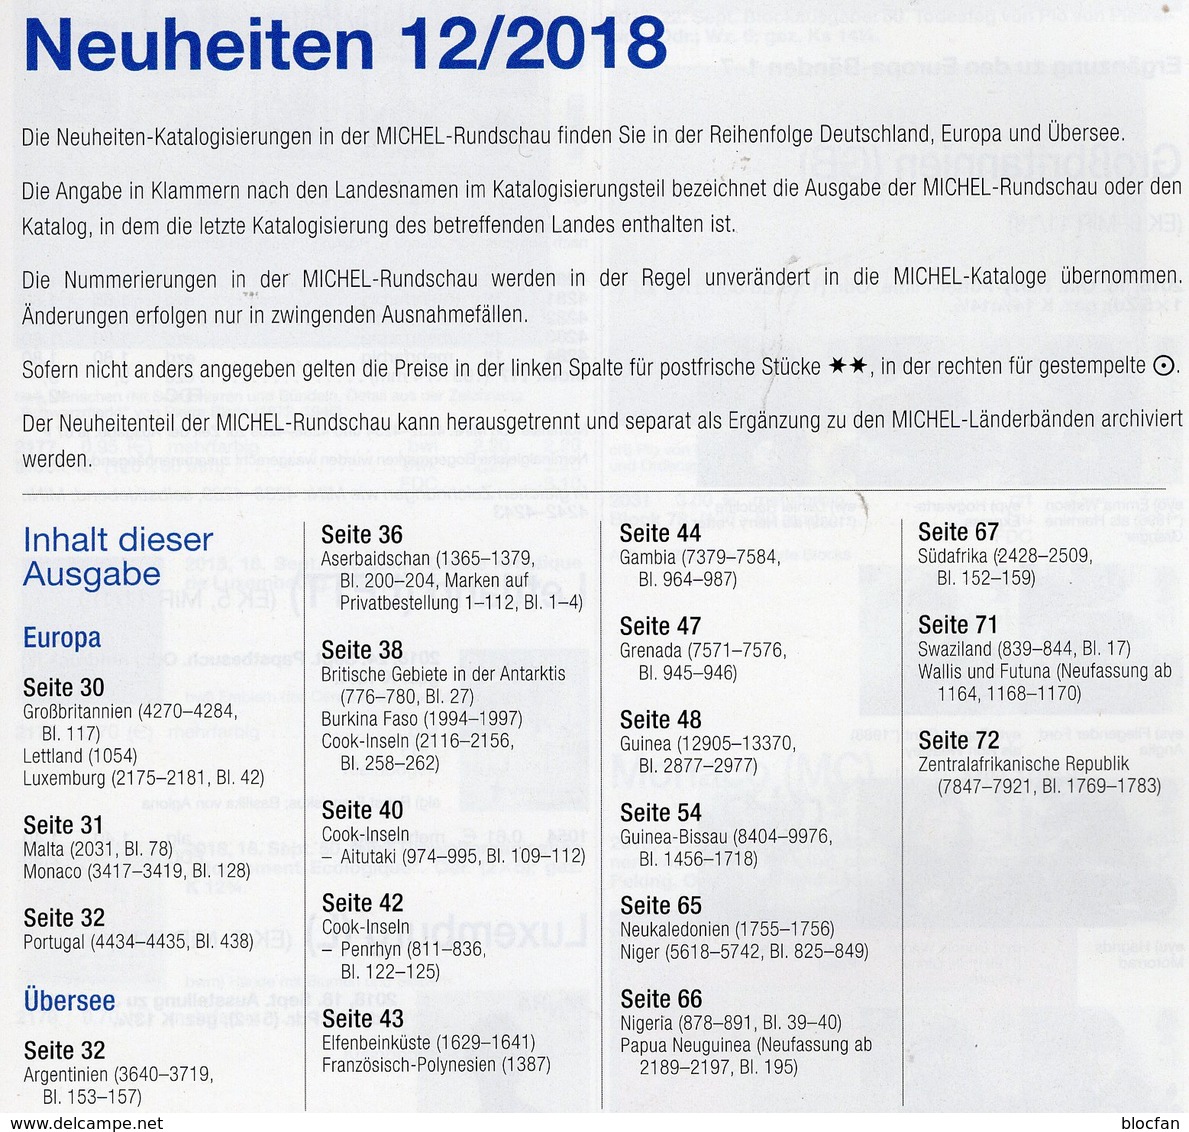 Briefmarken Rundschau MICHEL 12/2018 Neu 6€ Stamp Of The World Catalogue/magacine Of Germany ISBN 978-3-95402-600-5 - German